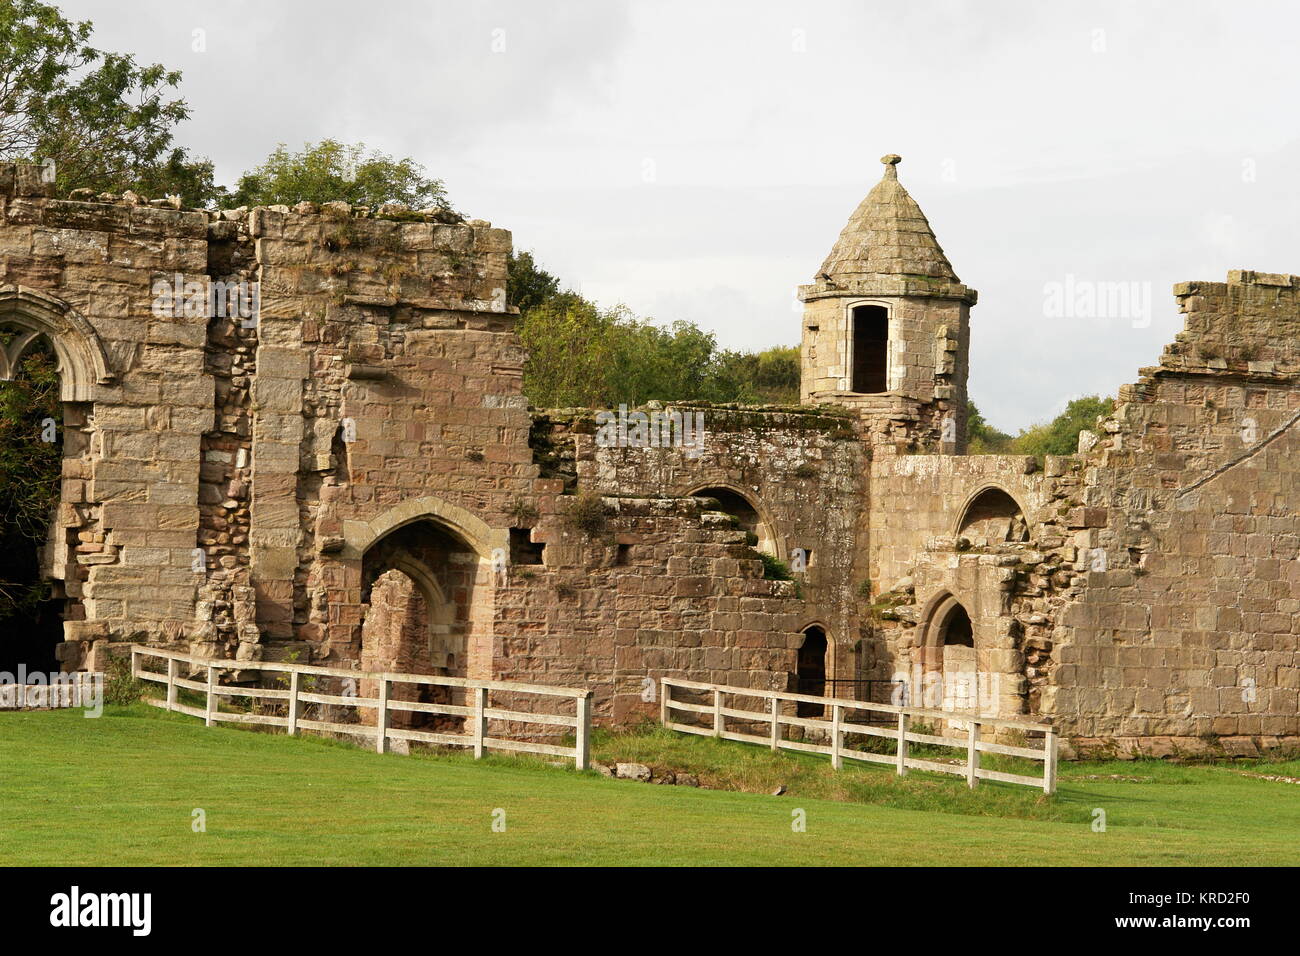 Vue rapprochée des ruines du château de Spofforth, près de Harrogate dans le North Yorkshire, un manoir fortifié appartenant à l'origine à la famille Percy, datant principalement des 14e et 15e siècles. Banque D'Images